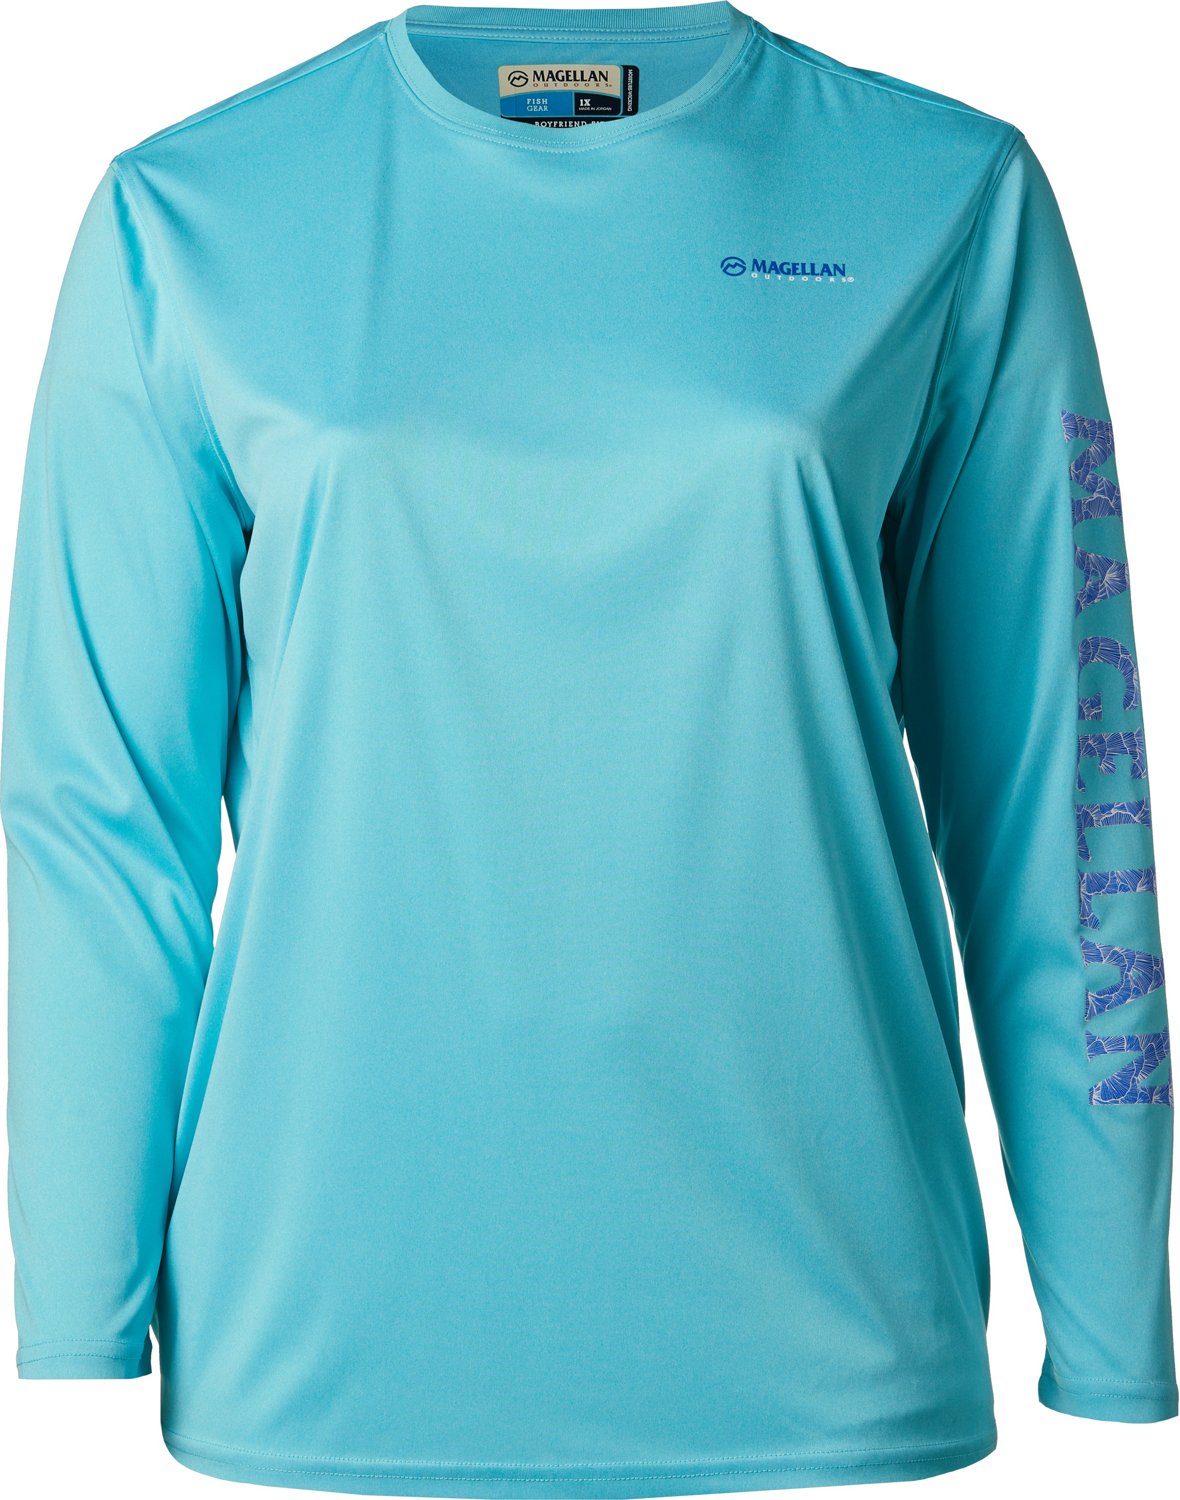 Magellan Outdoors Women's Caddo Lake Logo Long Sleeve Plus Size